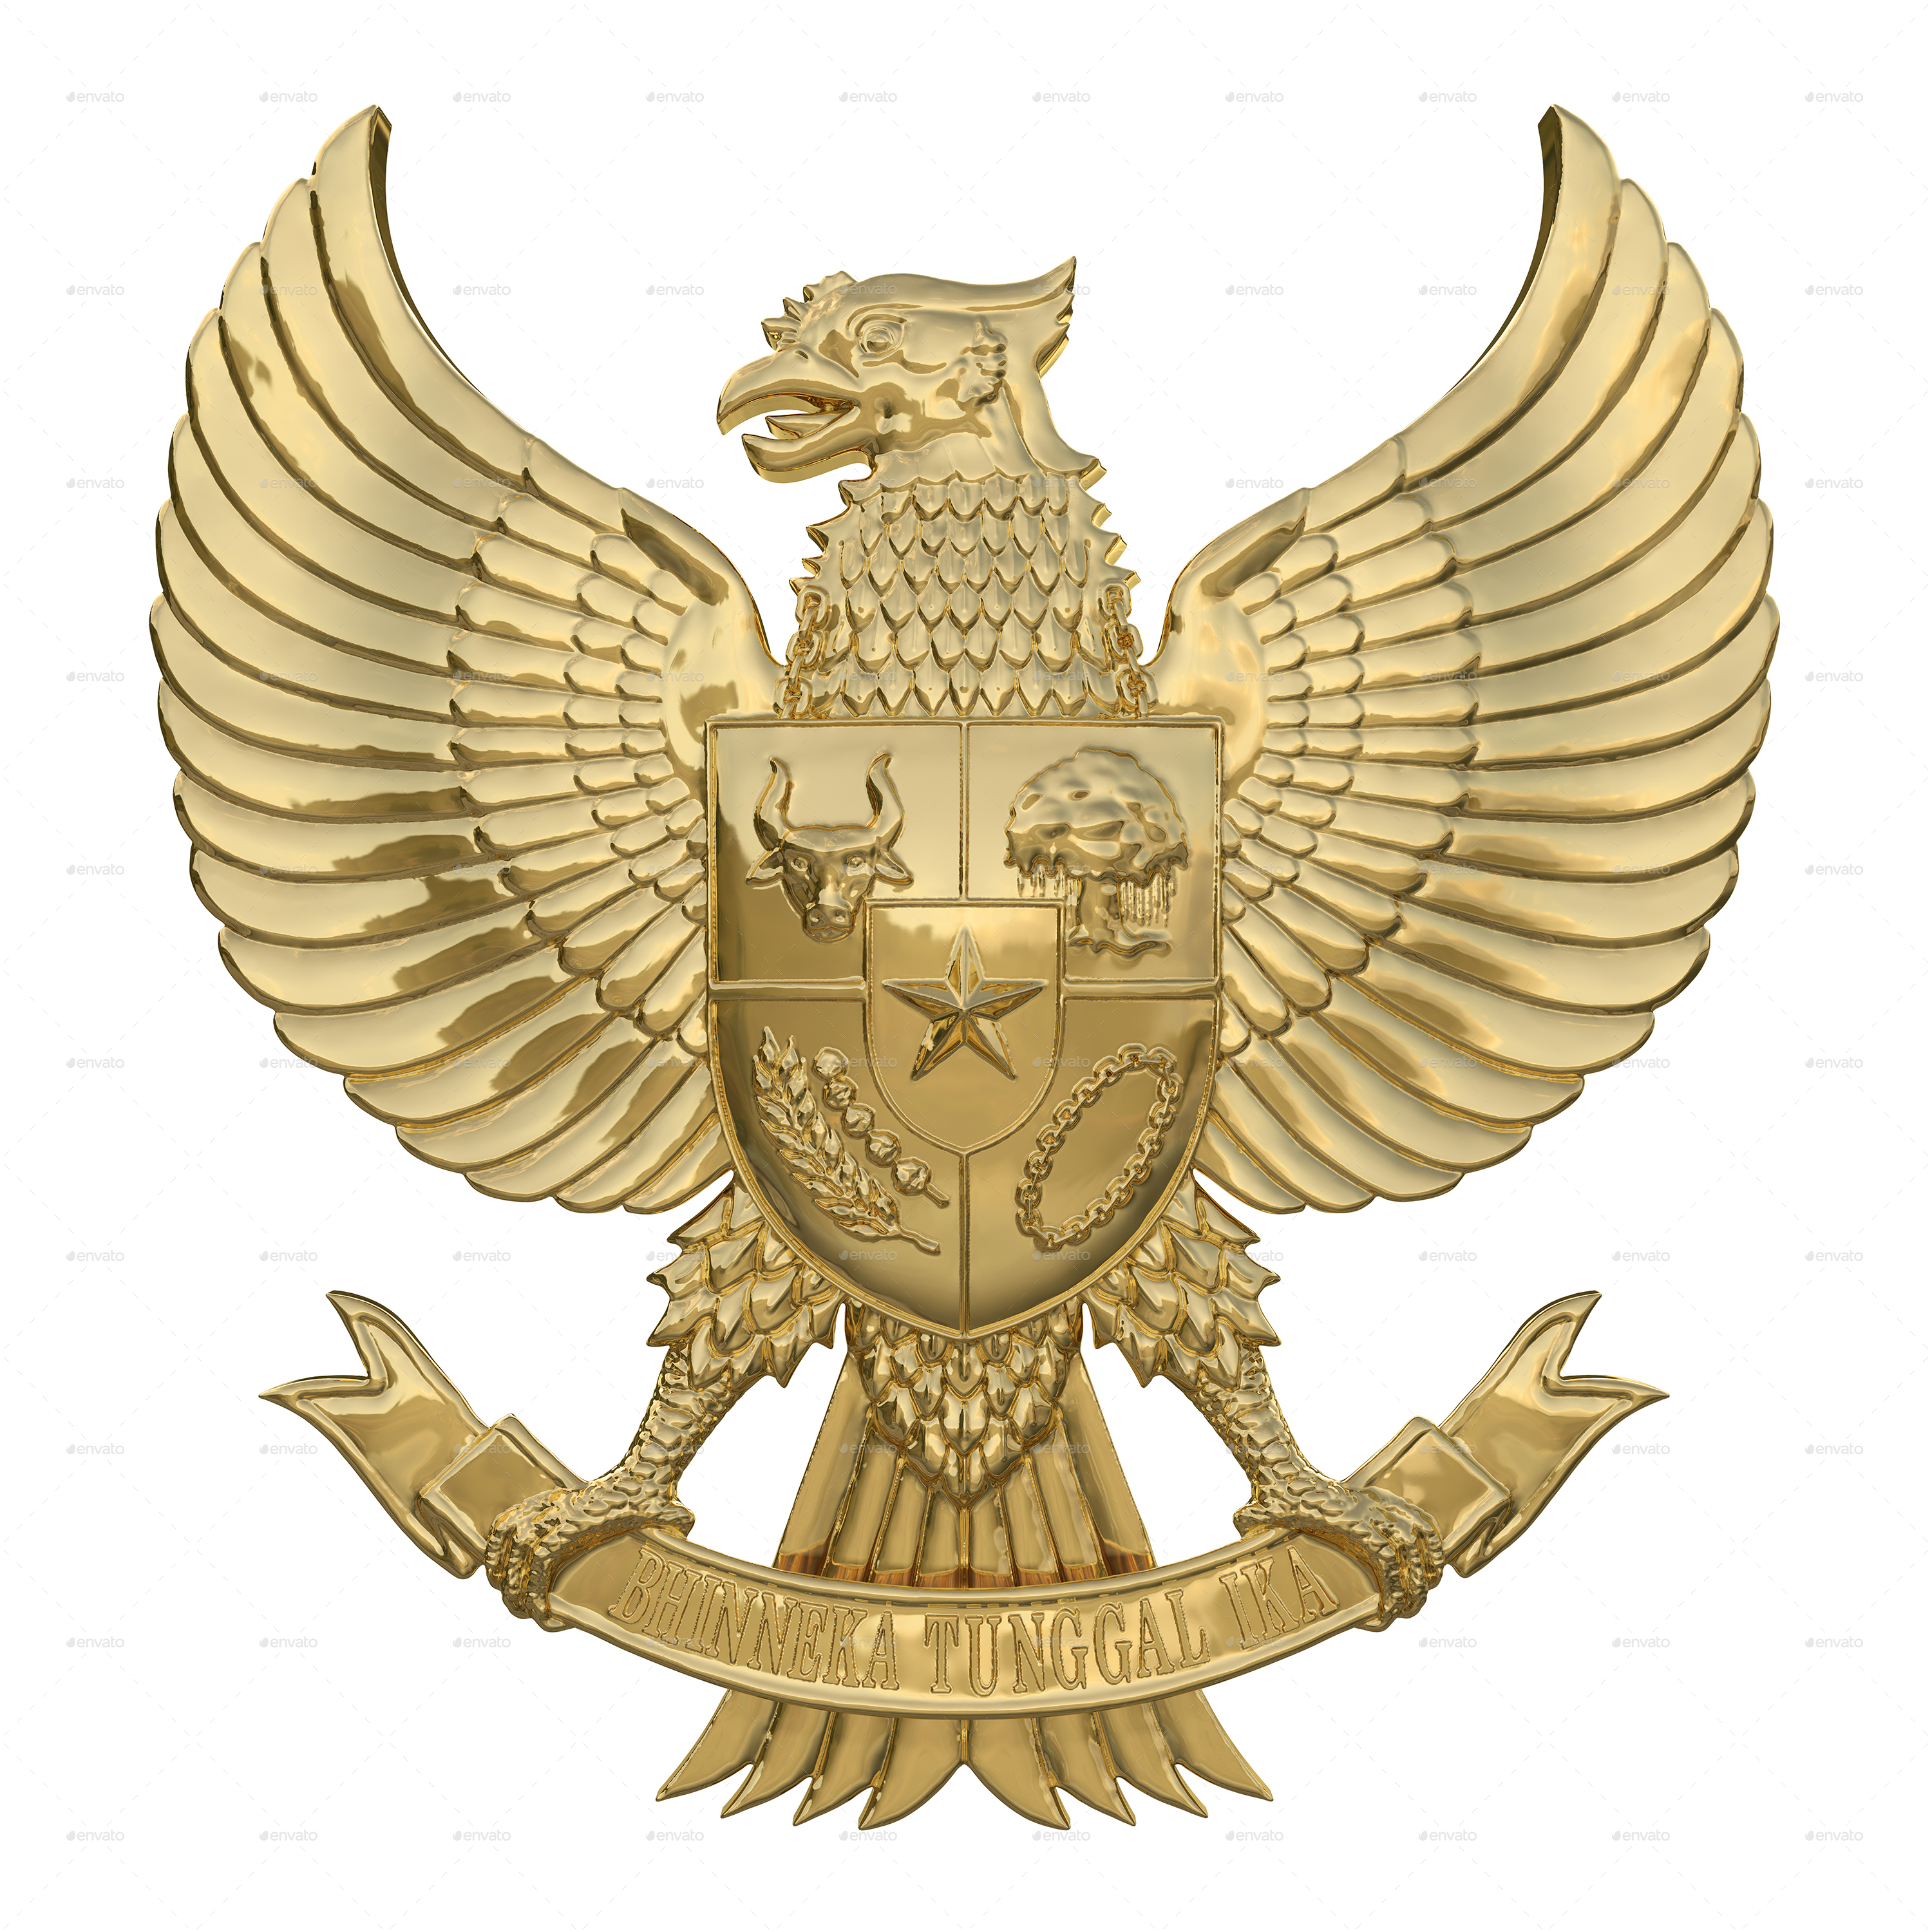  Garuda  Pancasila Indonesia National Symbol  by apridinoto 